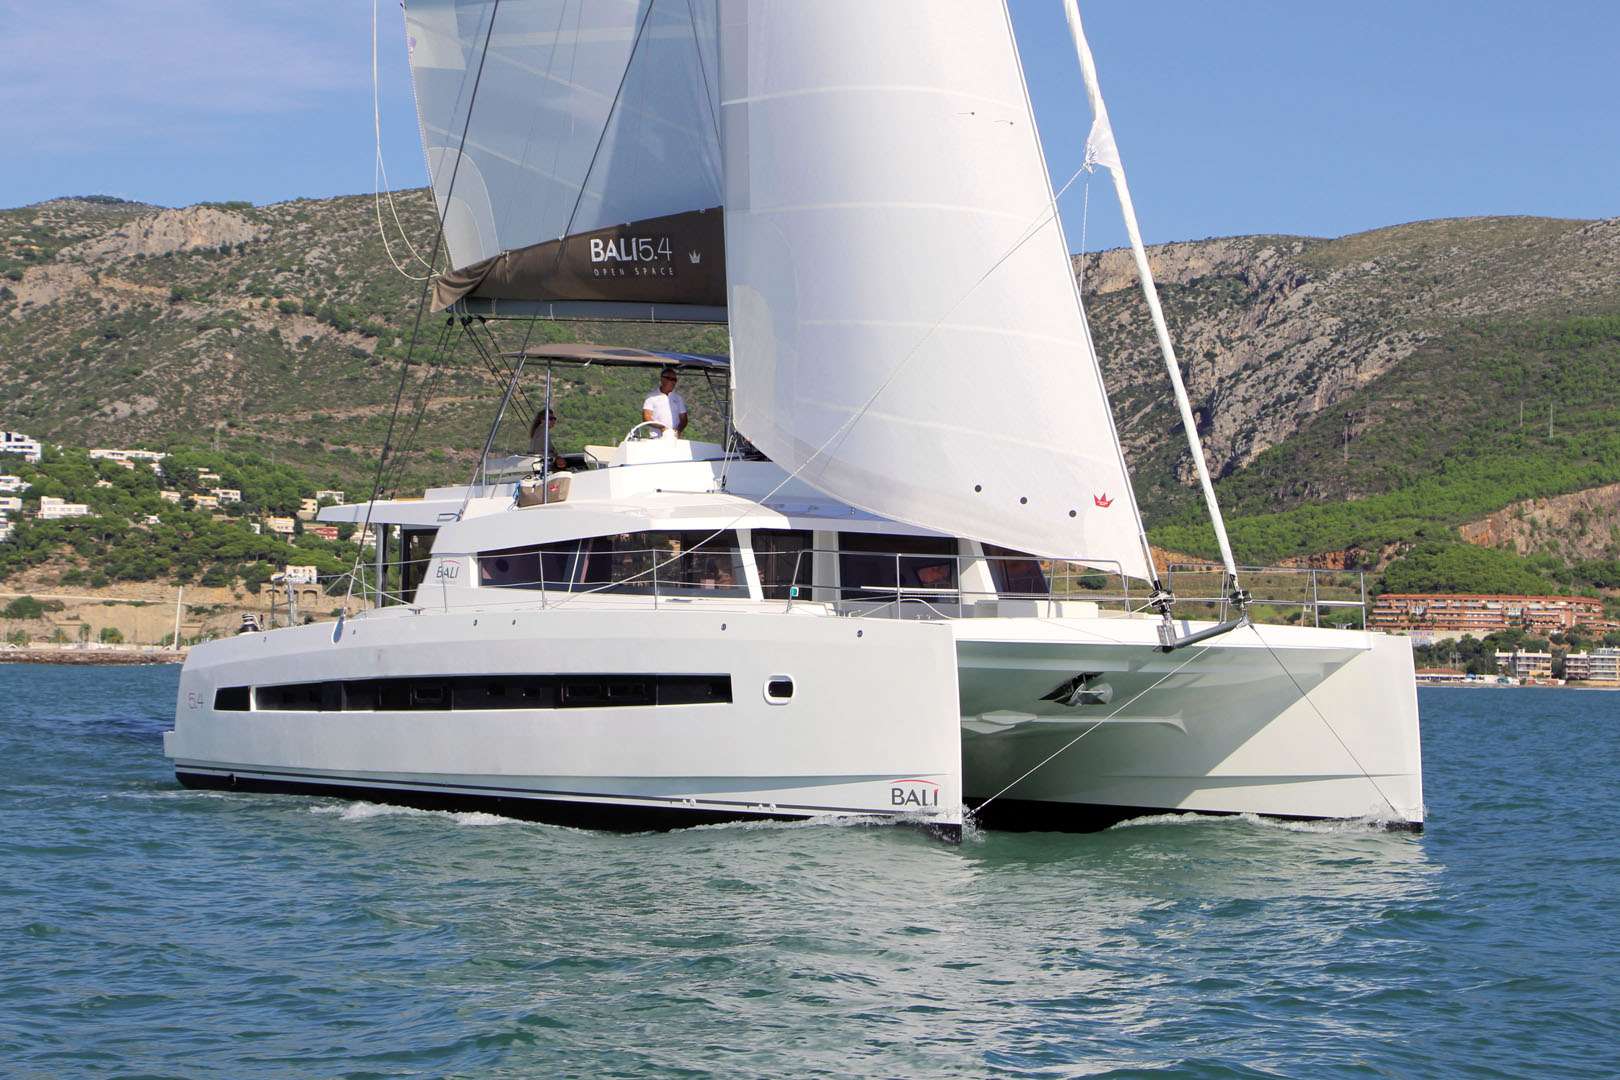 MIM OCEAN ONE - Yacht Charter Vilajoyosa & Boat hire in Balearics & Spain 1